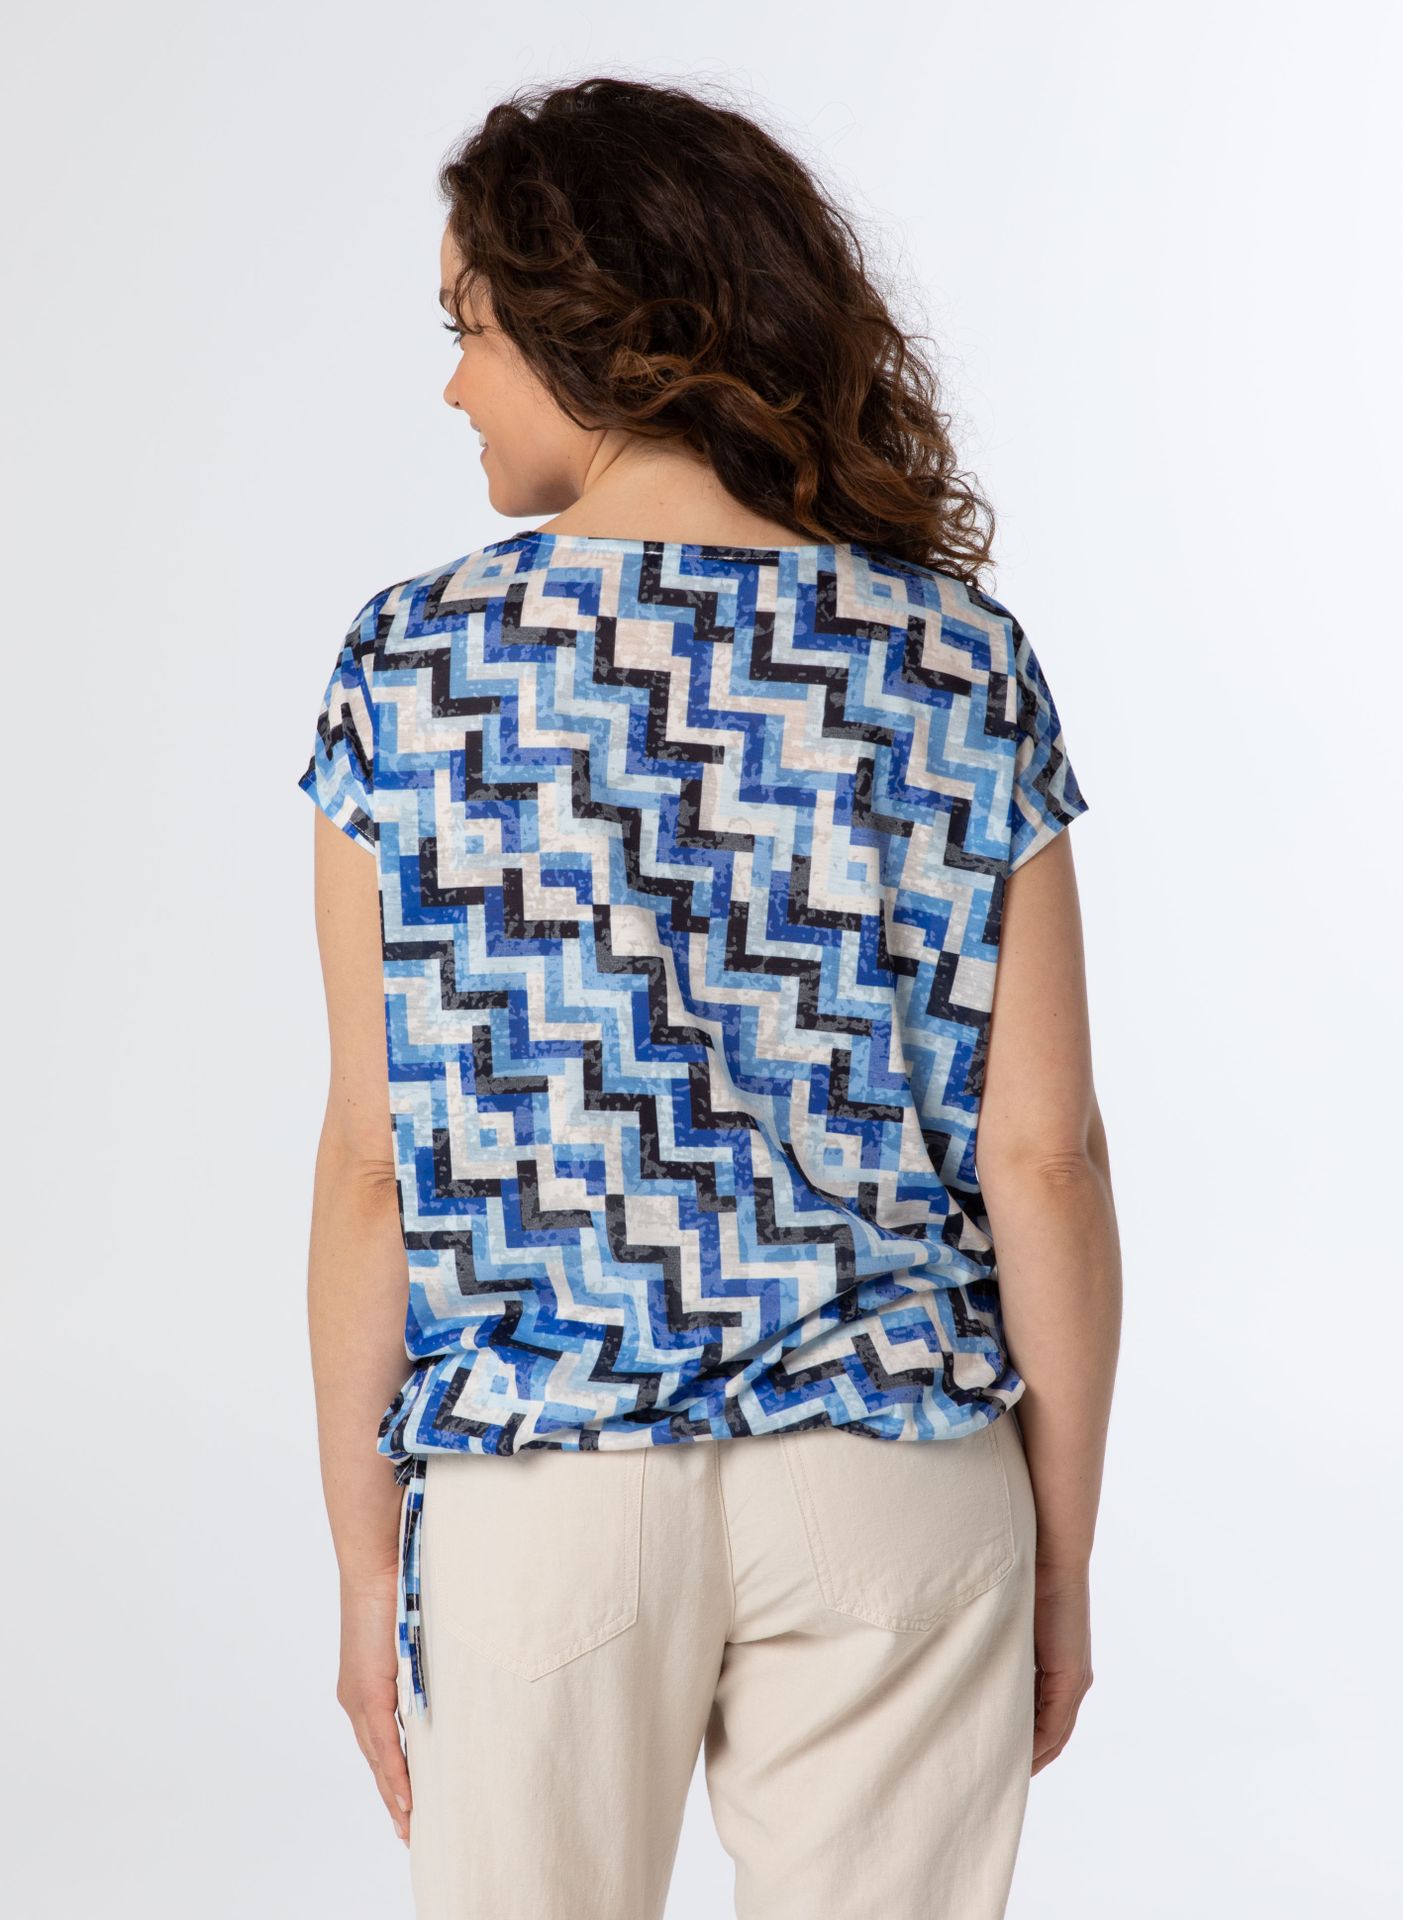 Norah Shirt blauw multi cobalt multicolor 213037-469